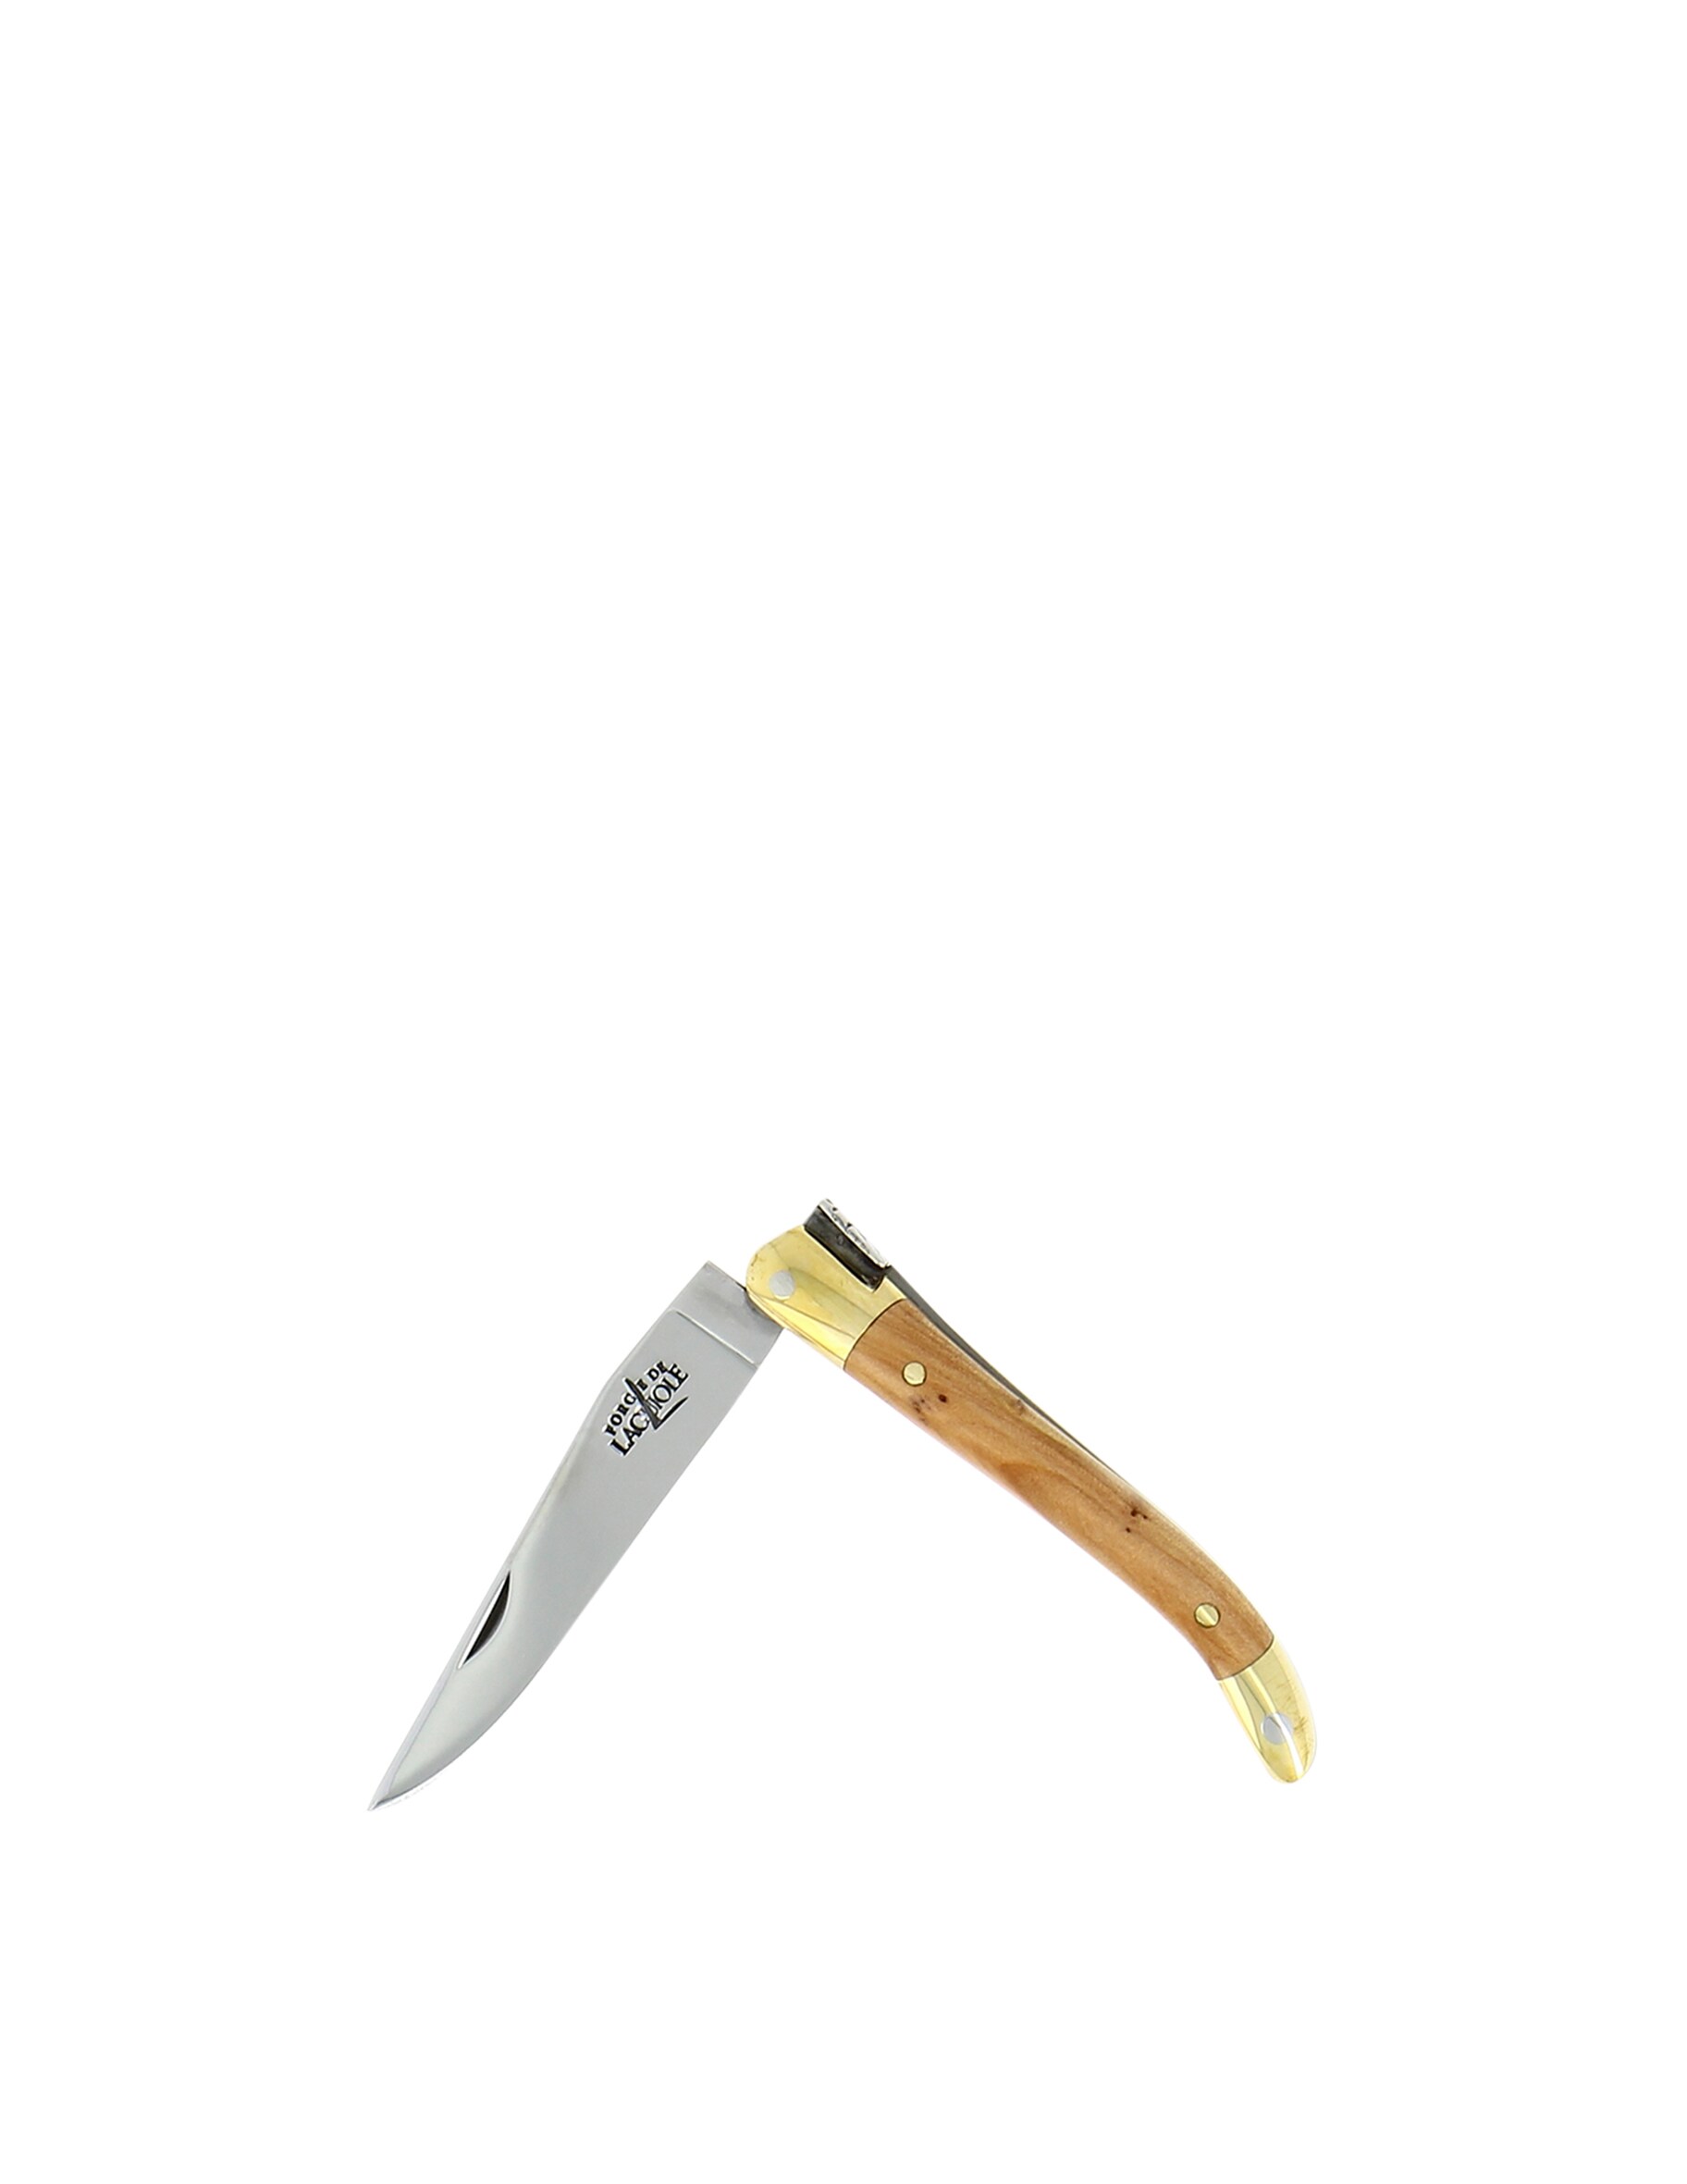 Карманный нож 7см с ручкой из можжевельника Forge De Laguiole сабля en aubrac sabre сhampagne olivier для сабража 40 см cms99oli hzb1 forge de laguiole